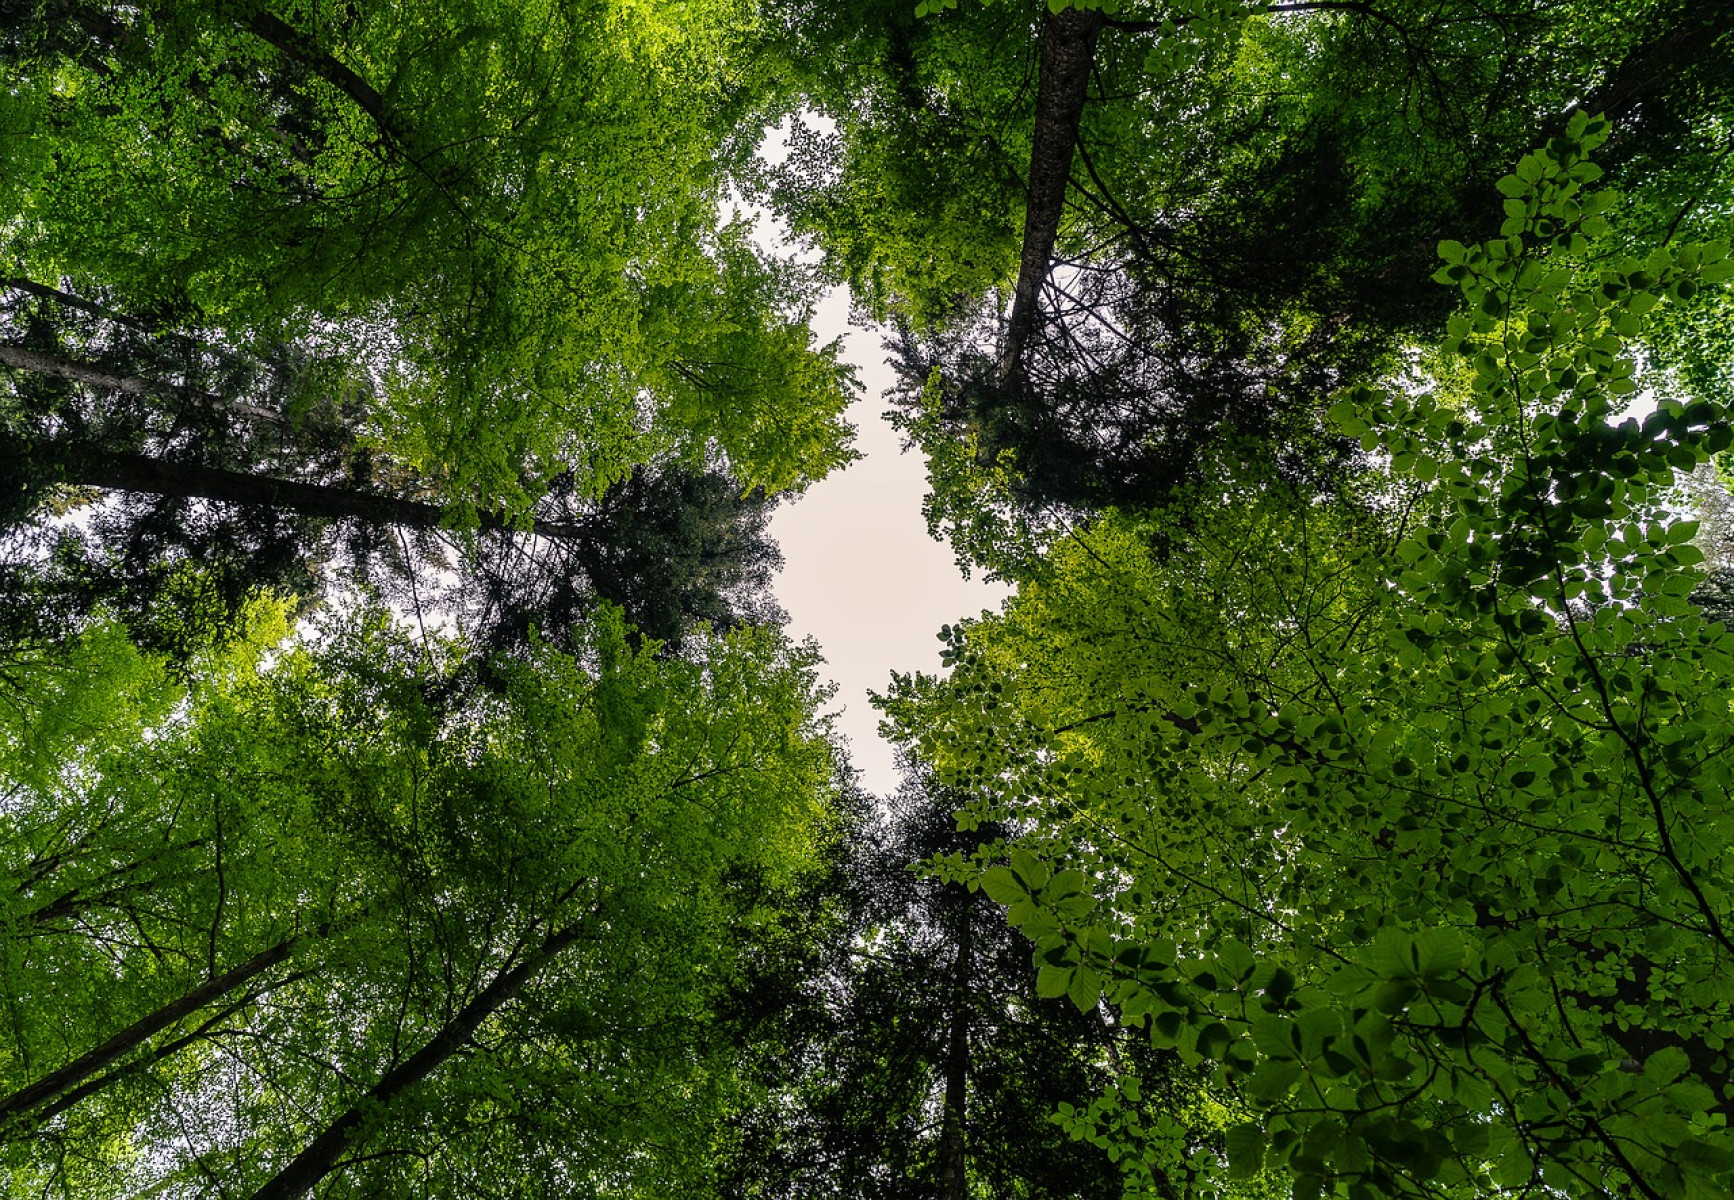 Az EU jogszabály elfogadását sürgeti a globális erdőirtás megfékezésére